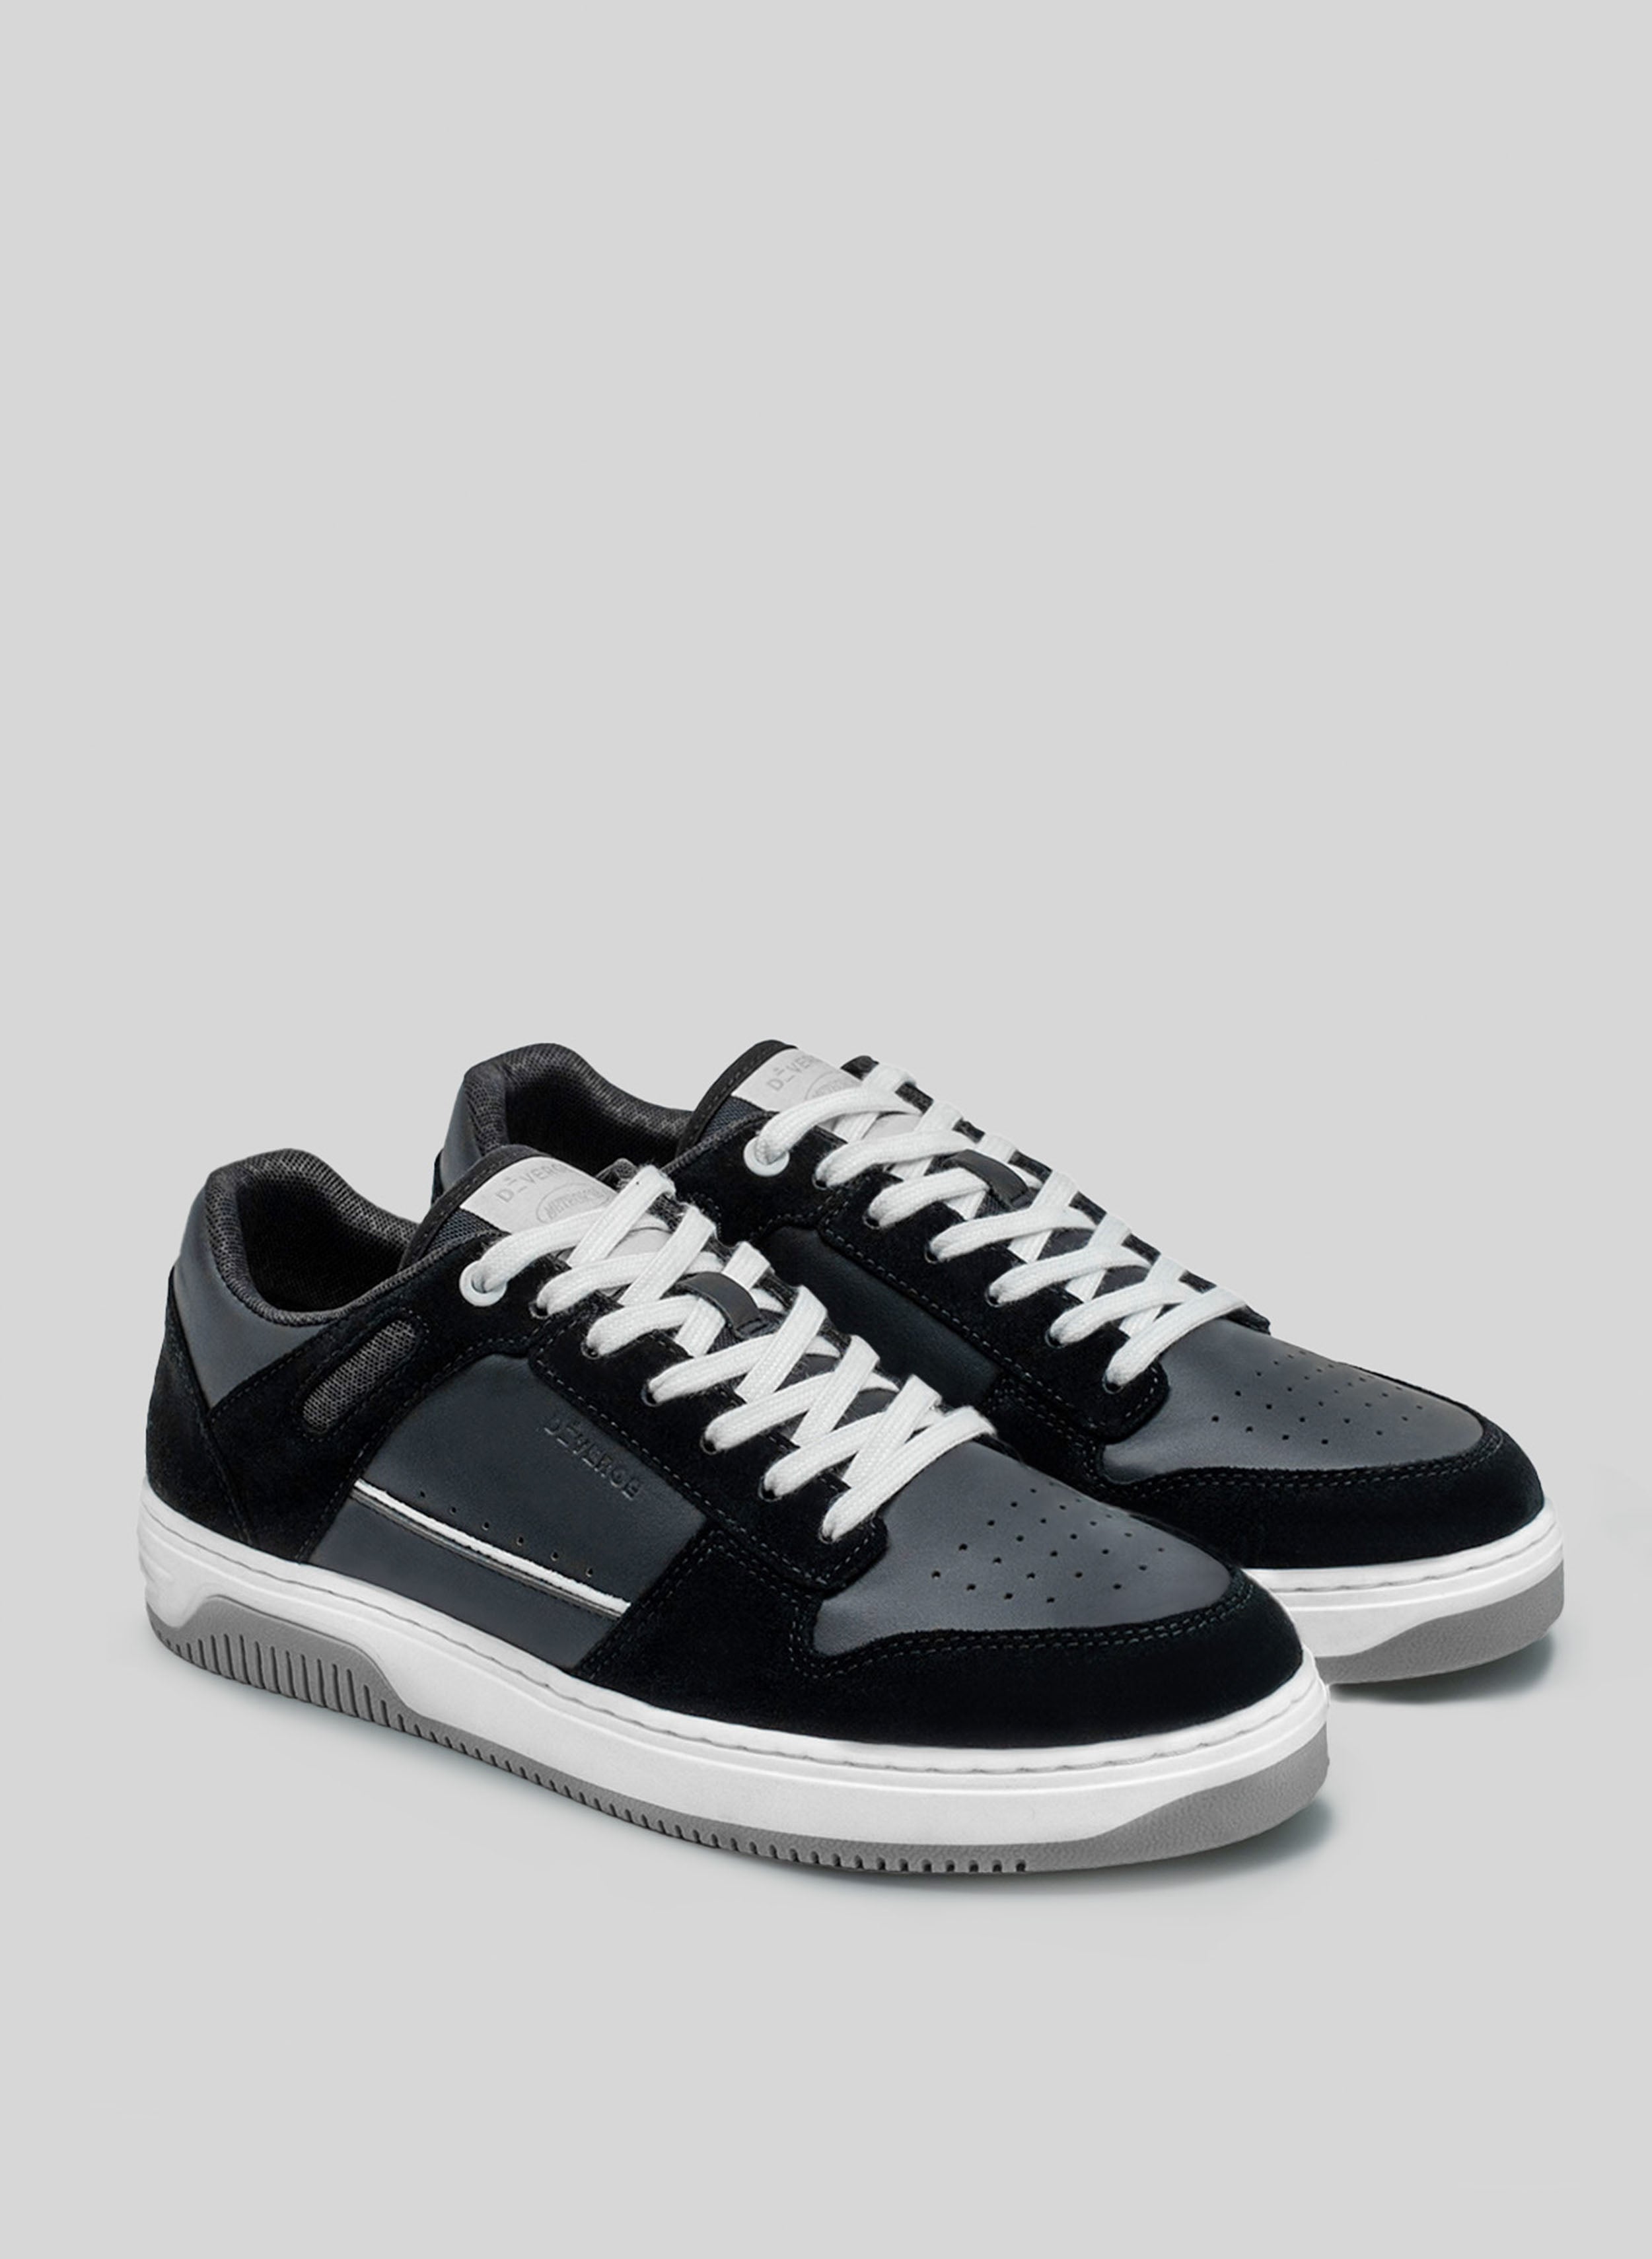 sneakers bianco e nero con suola grigia di Diverge, che promuove l'impatto sociale e le scarpe personalizzate attraverso il progetto imagine. 